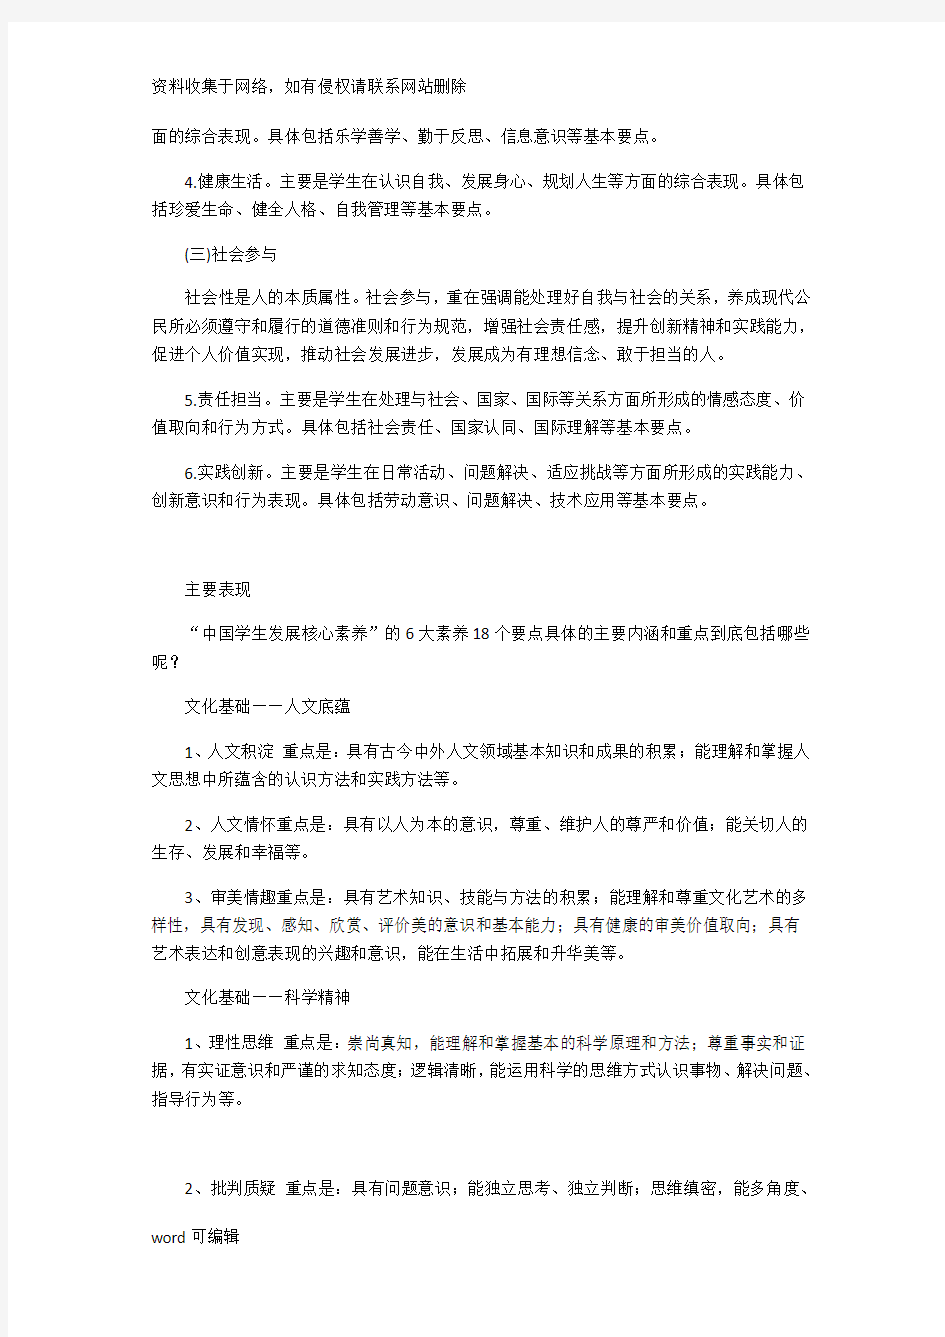 中国小学生六大核心素养教学提纲